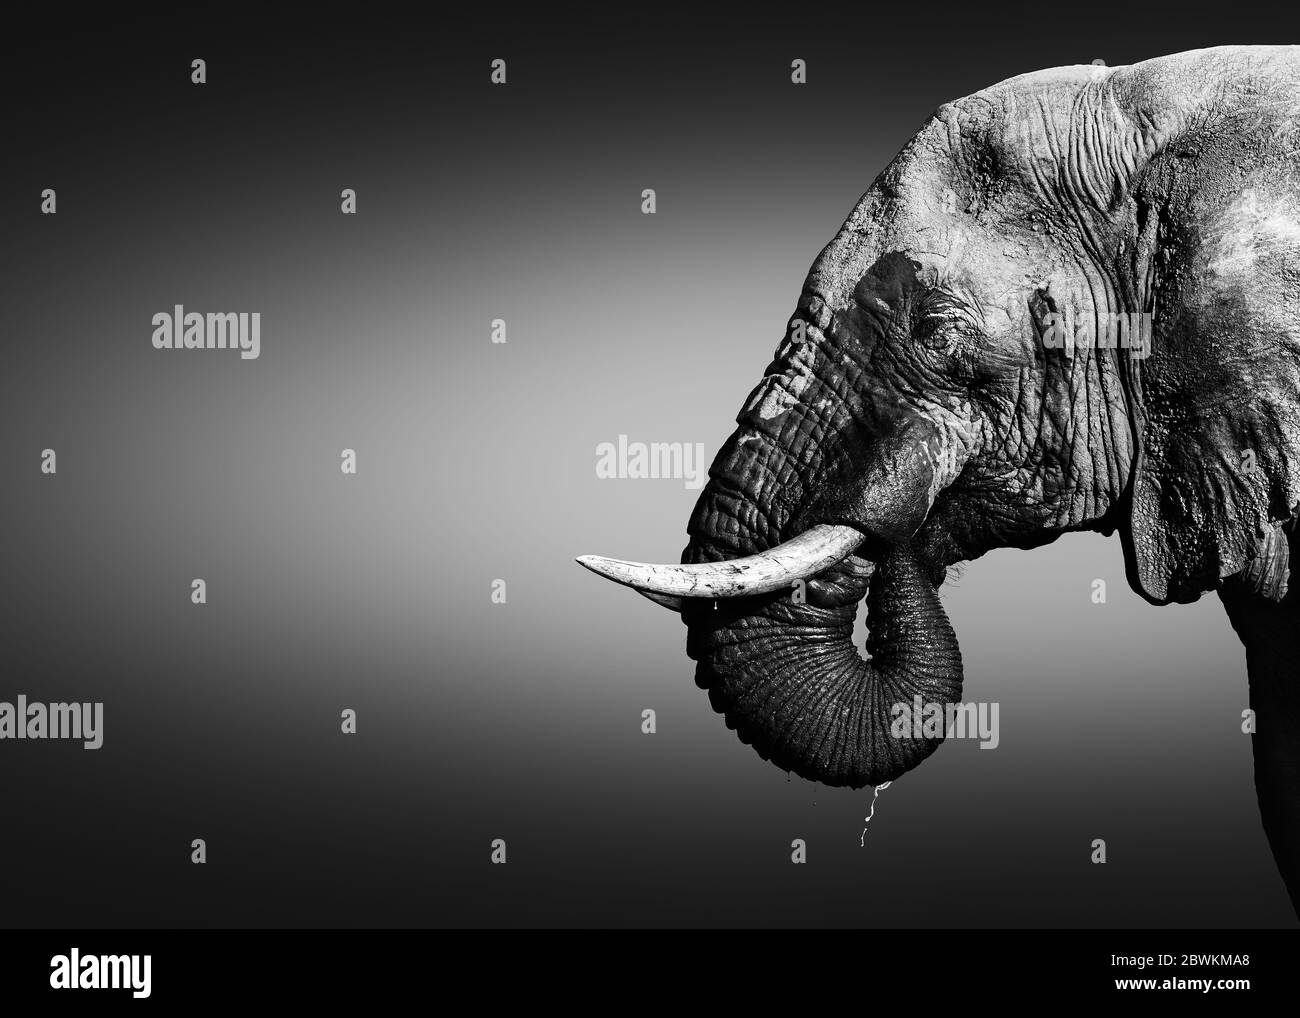 Elefantenbulle, Loxodonta africana, Nahaufnahme-Porträt Trinkwasser mit seinem Rüssel im Mund tropfendes Wasser in schwarz-weiß. Schöne Kunst Stockfoto